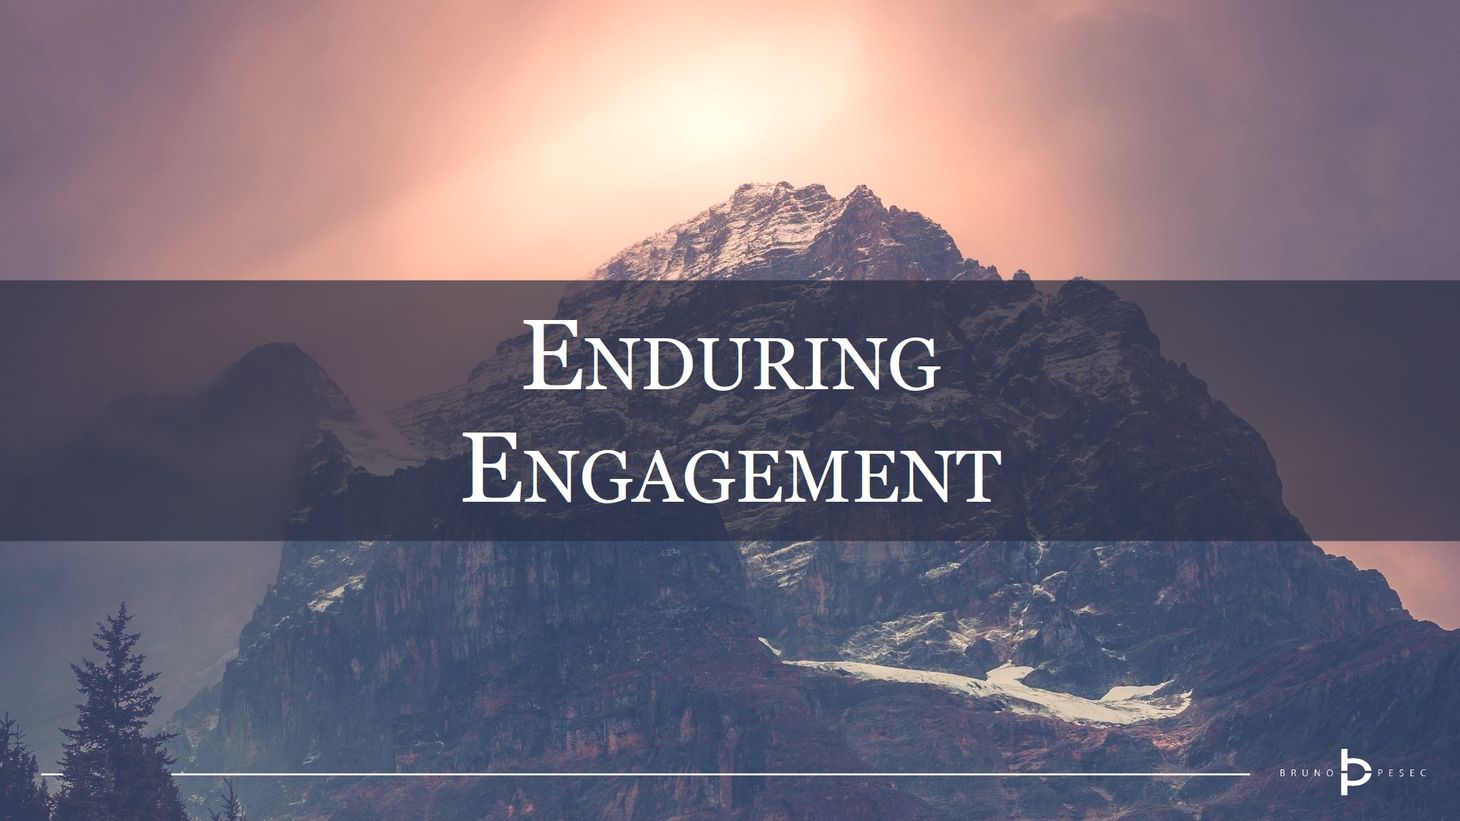 Enduring engagement